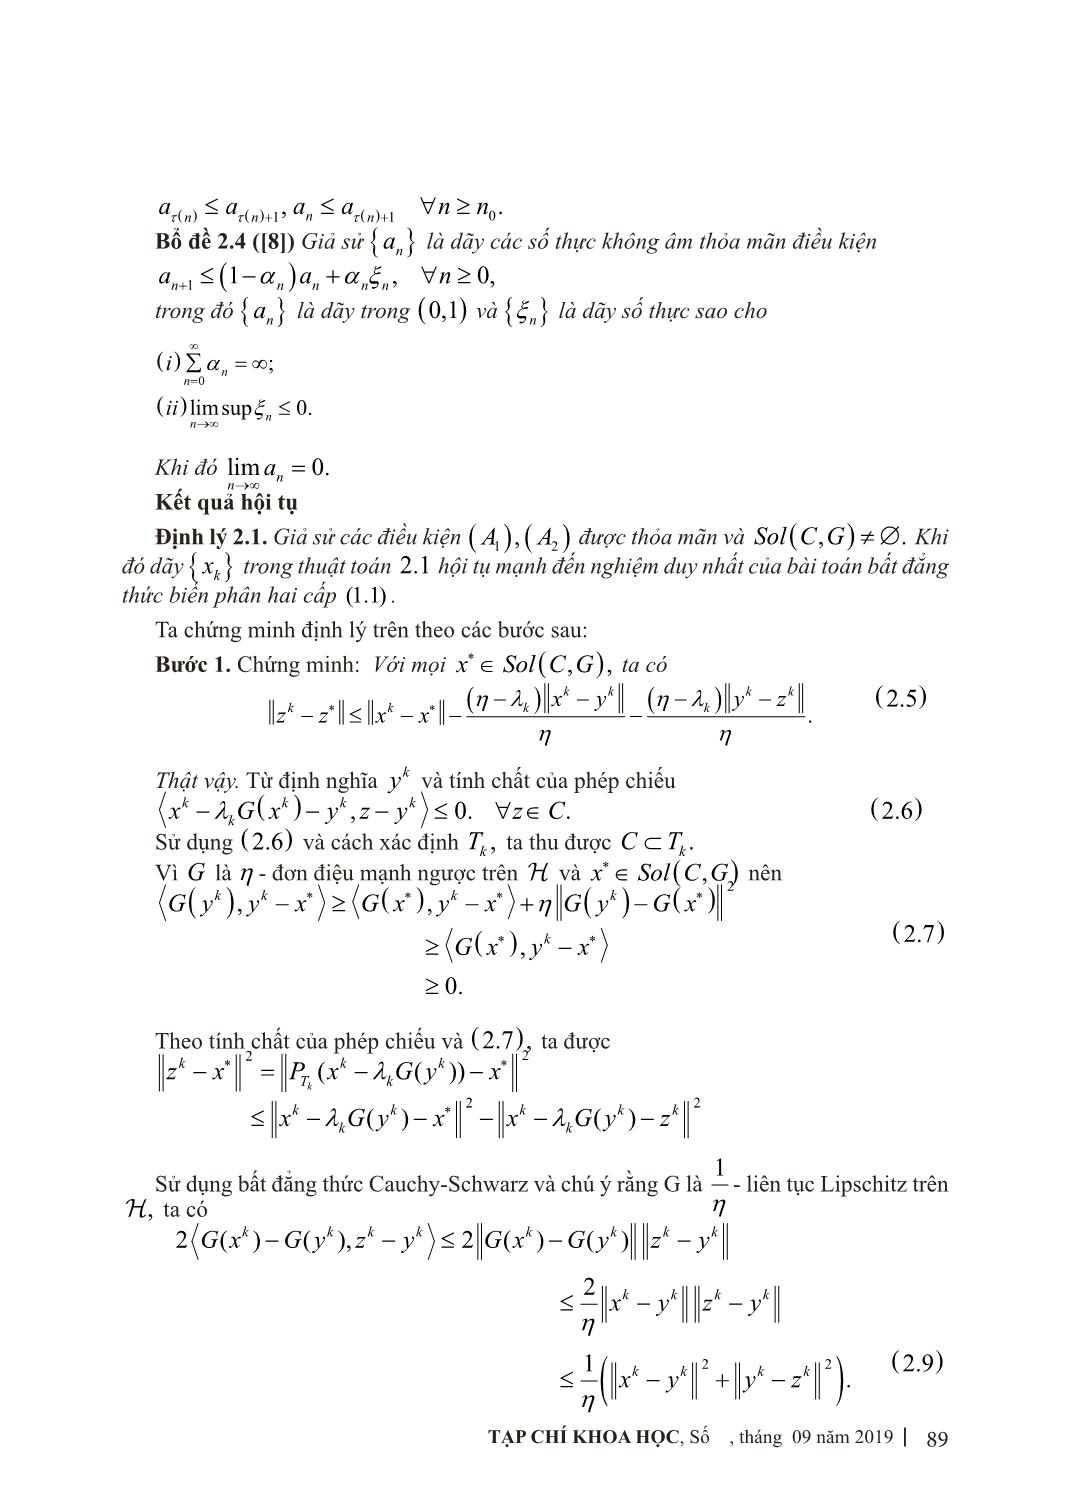 Phương pháp dưới đạo hàm tăng cường giải bài toán bất đẳng thức biến phân hai cấp trang 4